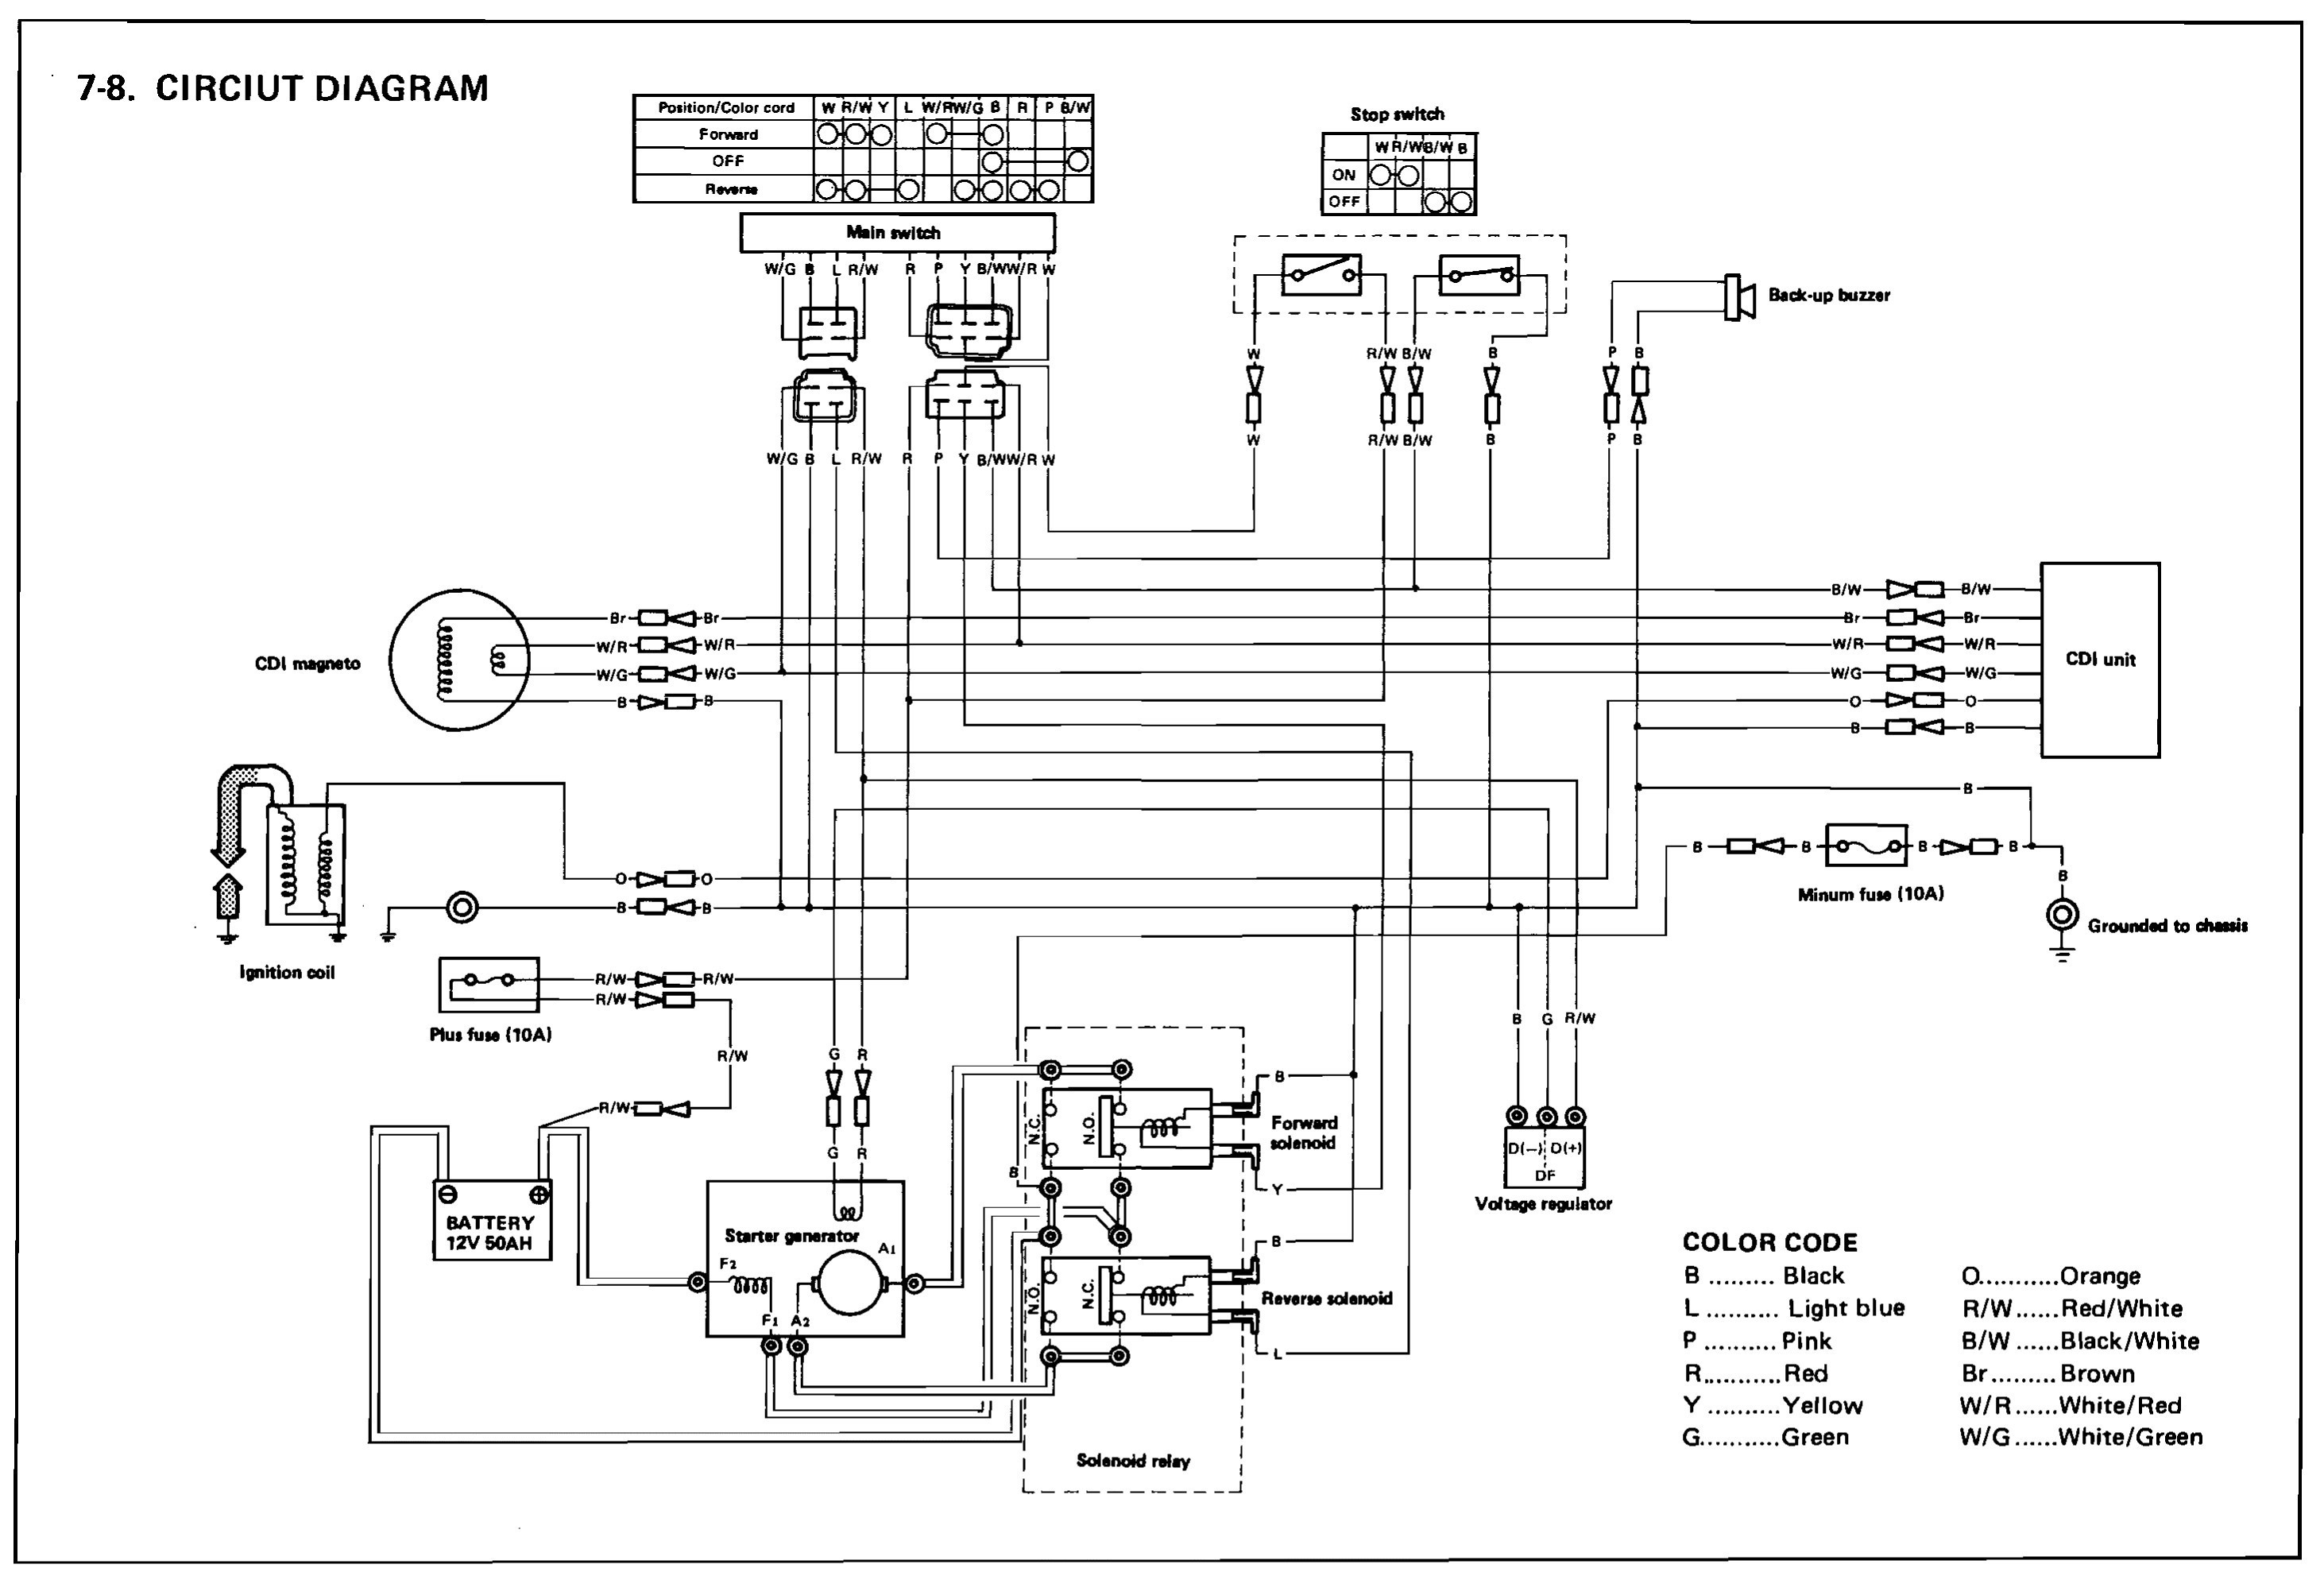 36 Volt solenoid Wiring Diagram Download Wiring Diagram yamaha golf cart wiring diagram Club Car